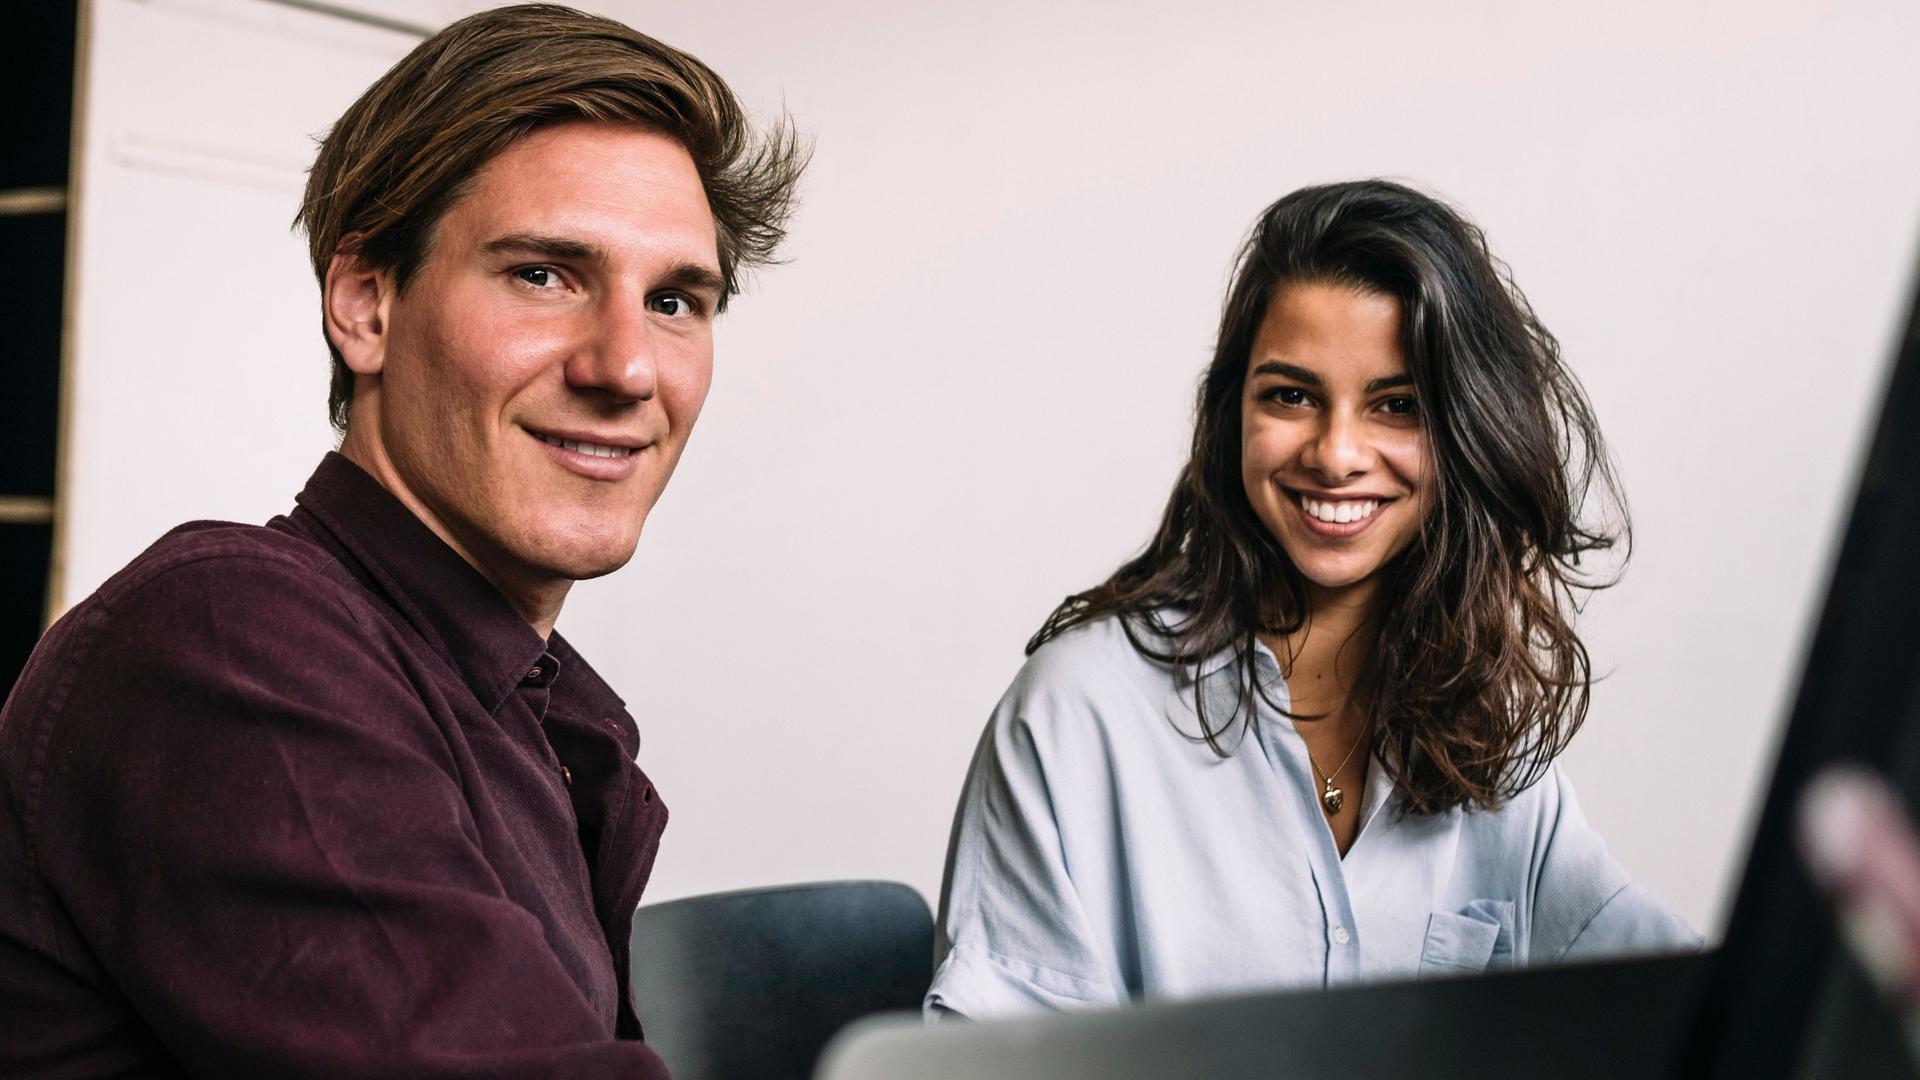 Porträt zweier Studenten, die vor einem Computer sitzen und lächelnd in die Kamera schauen.